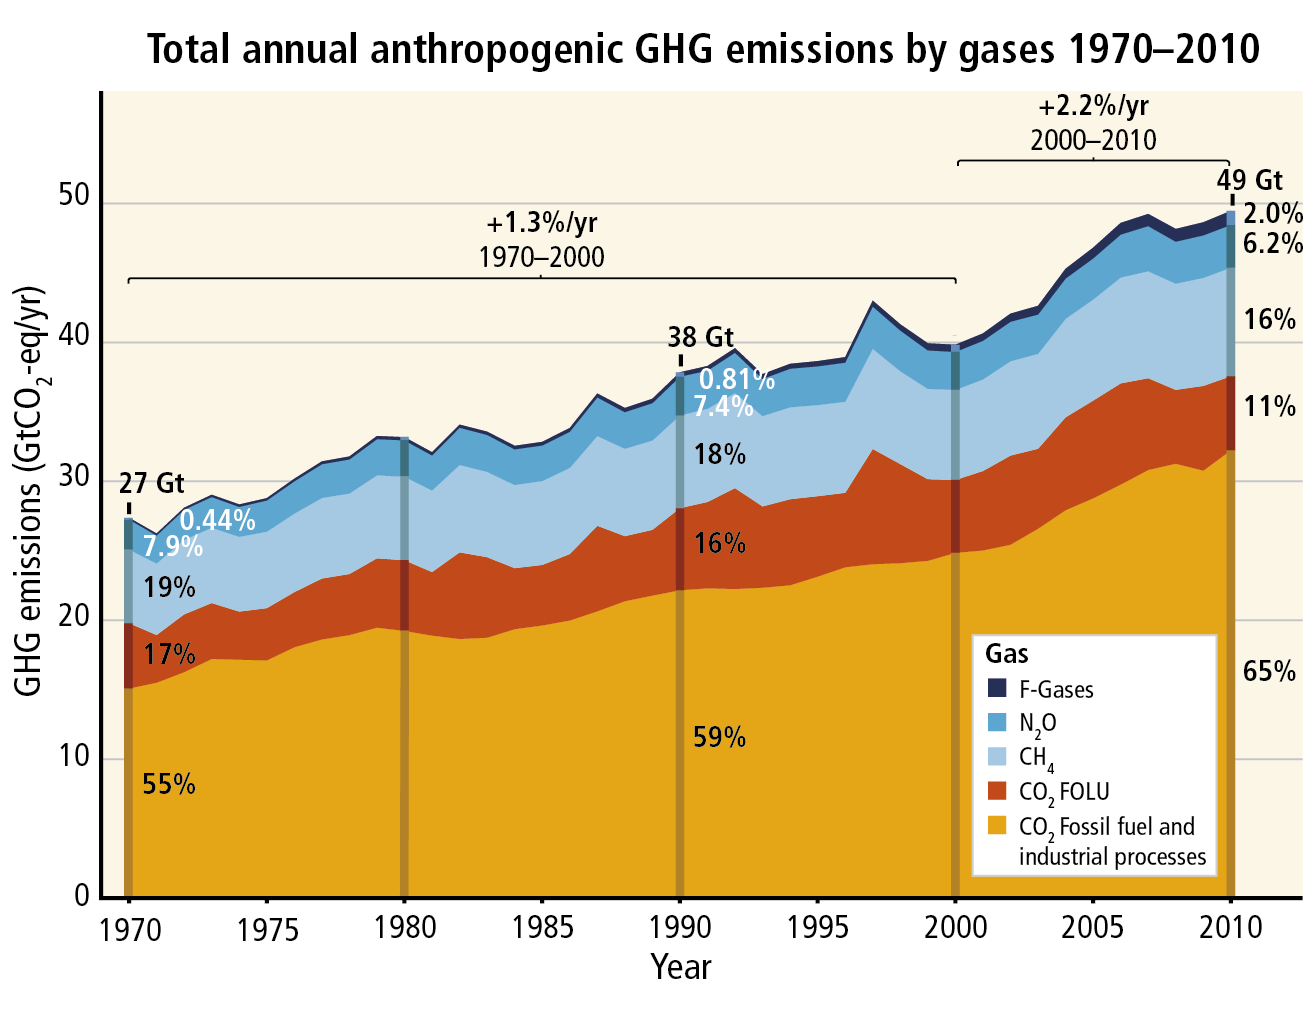 Aumento de las emisiones antropogénicas El total de las emisiones GEI por causa antropogénica se ha incrementado en los últimos 30 años, totalizando 49 (+/- 4.